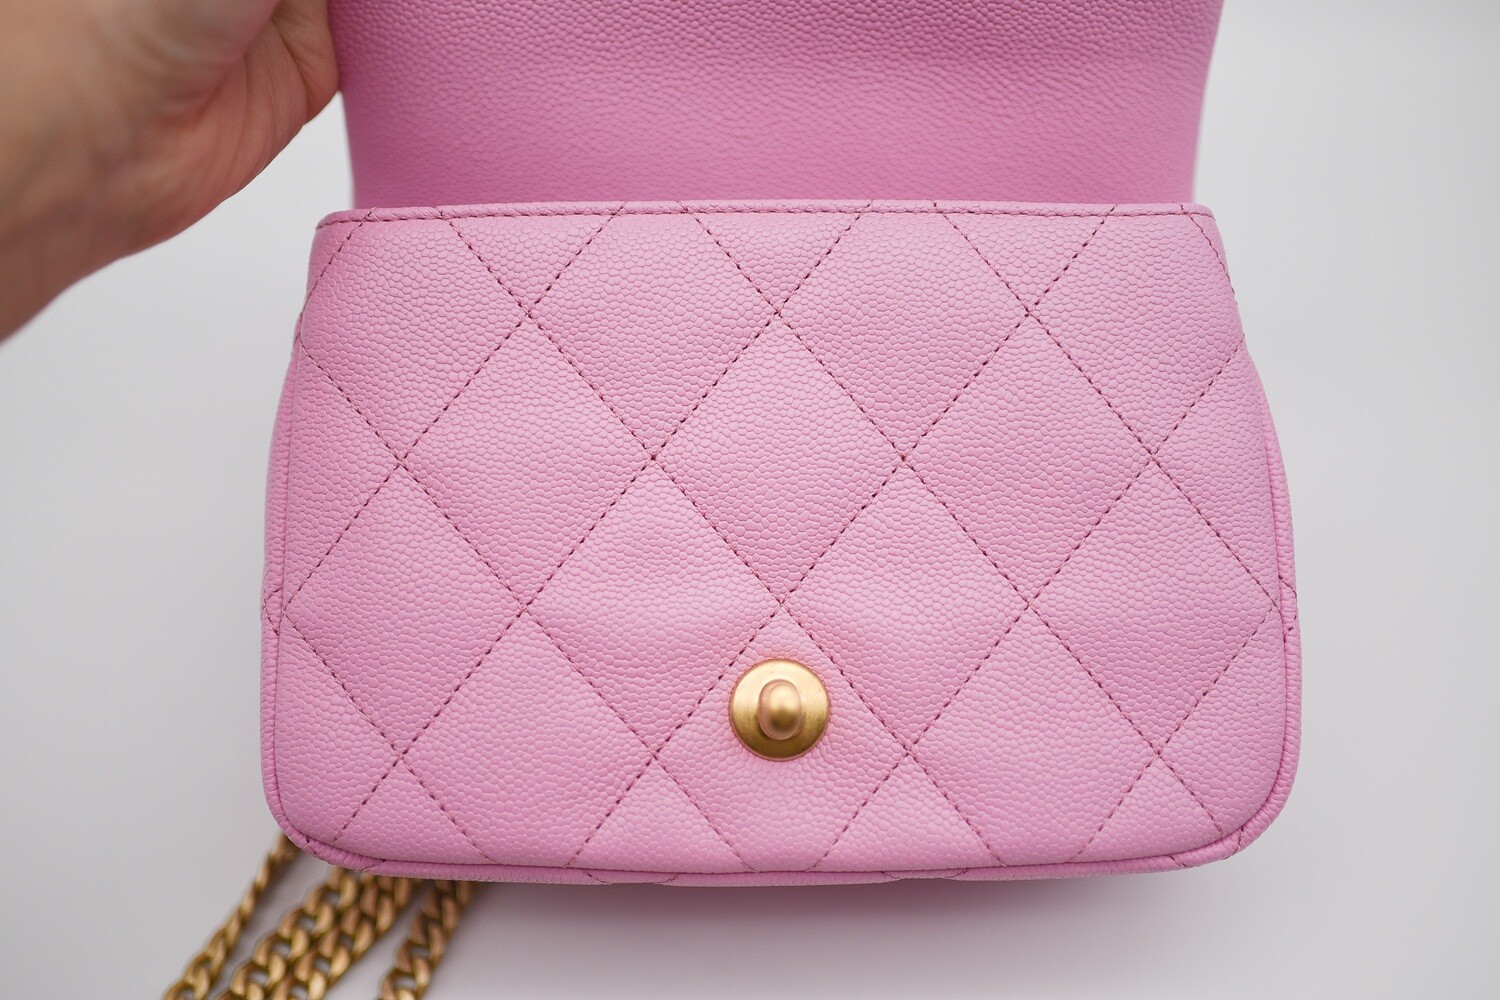 Chanel Seasonal Sweetheart Mini Flap, Pink Caviar Leather, Gold Hardware,  New in Box MA001